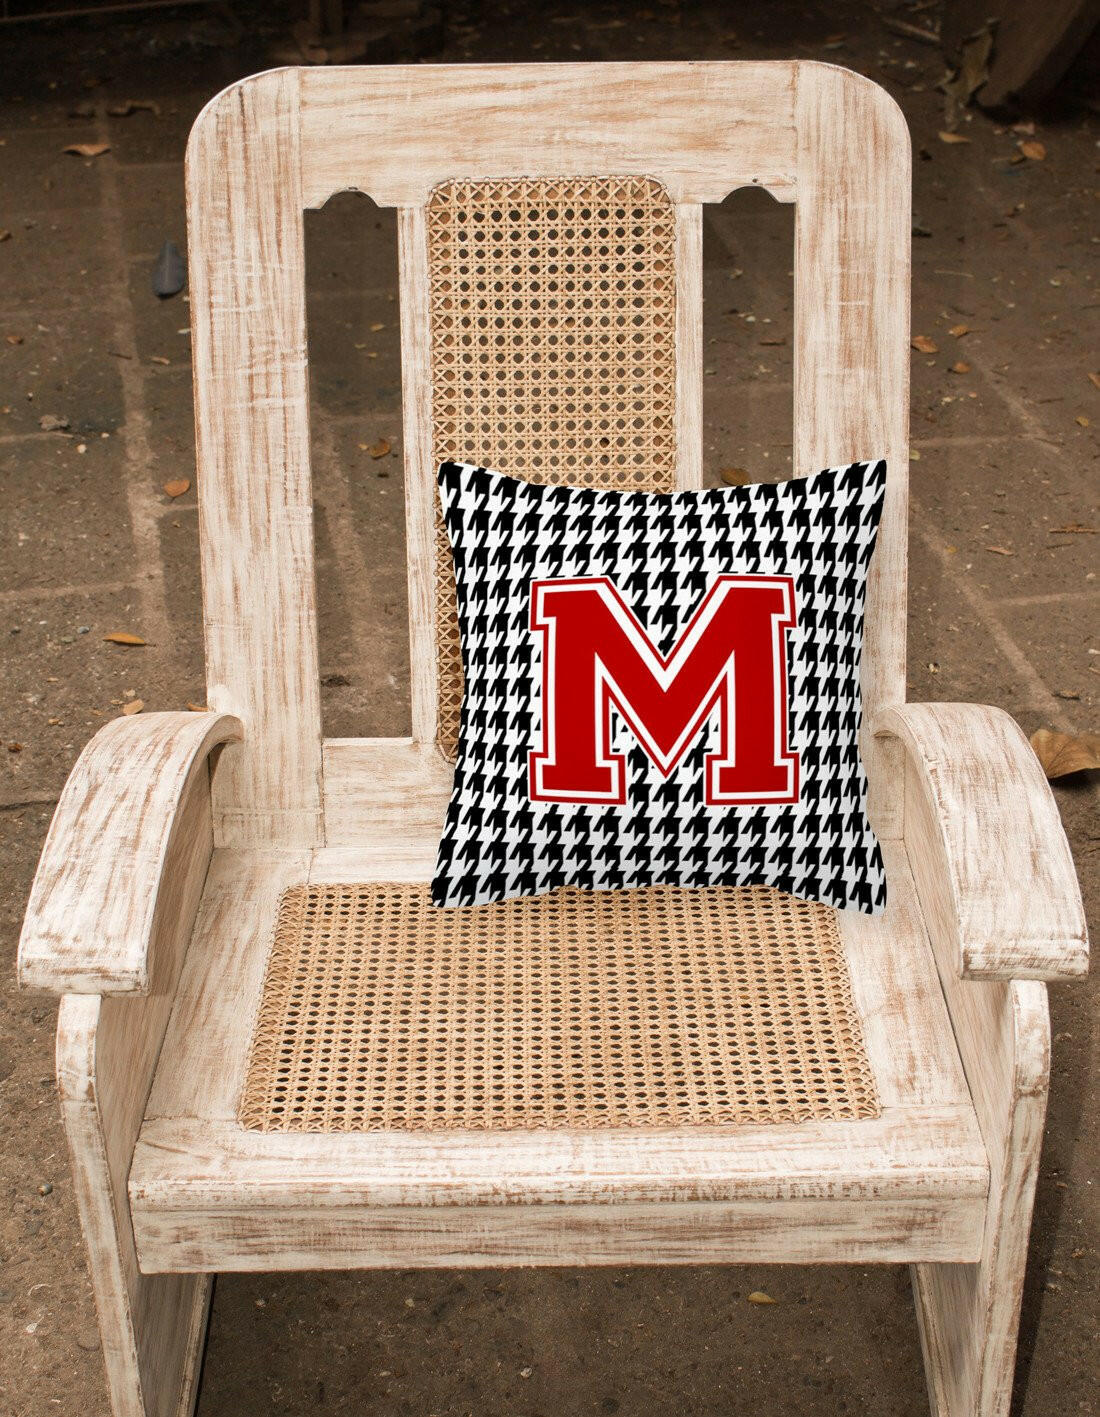 Monogram - Initial M Houndstooth Decorative   Canvas Fabric Pillow CJ1021 - the-store.com